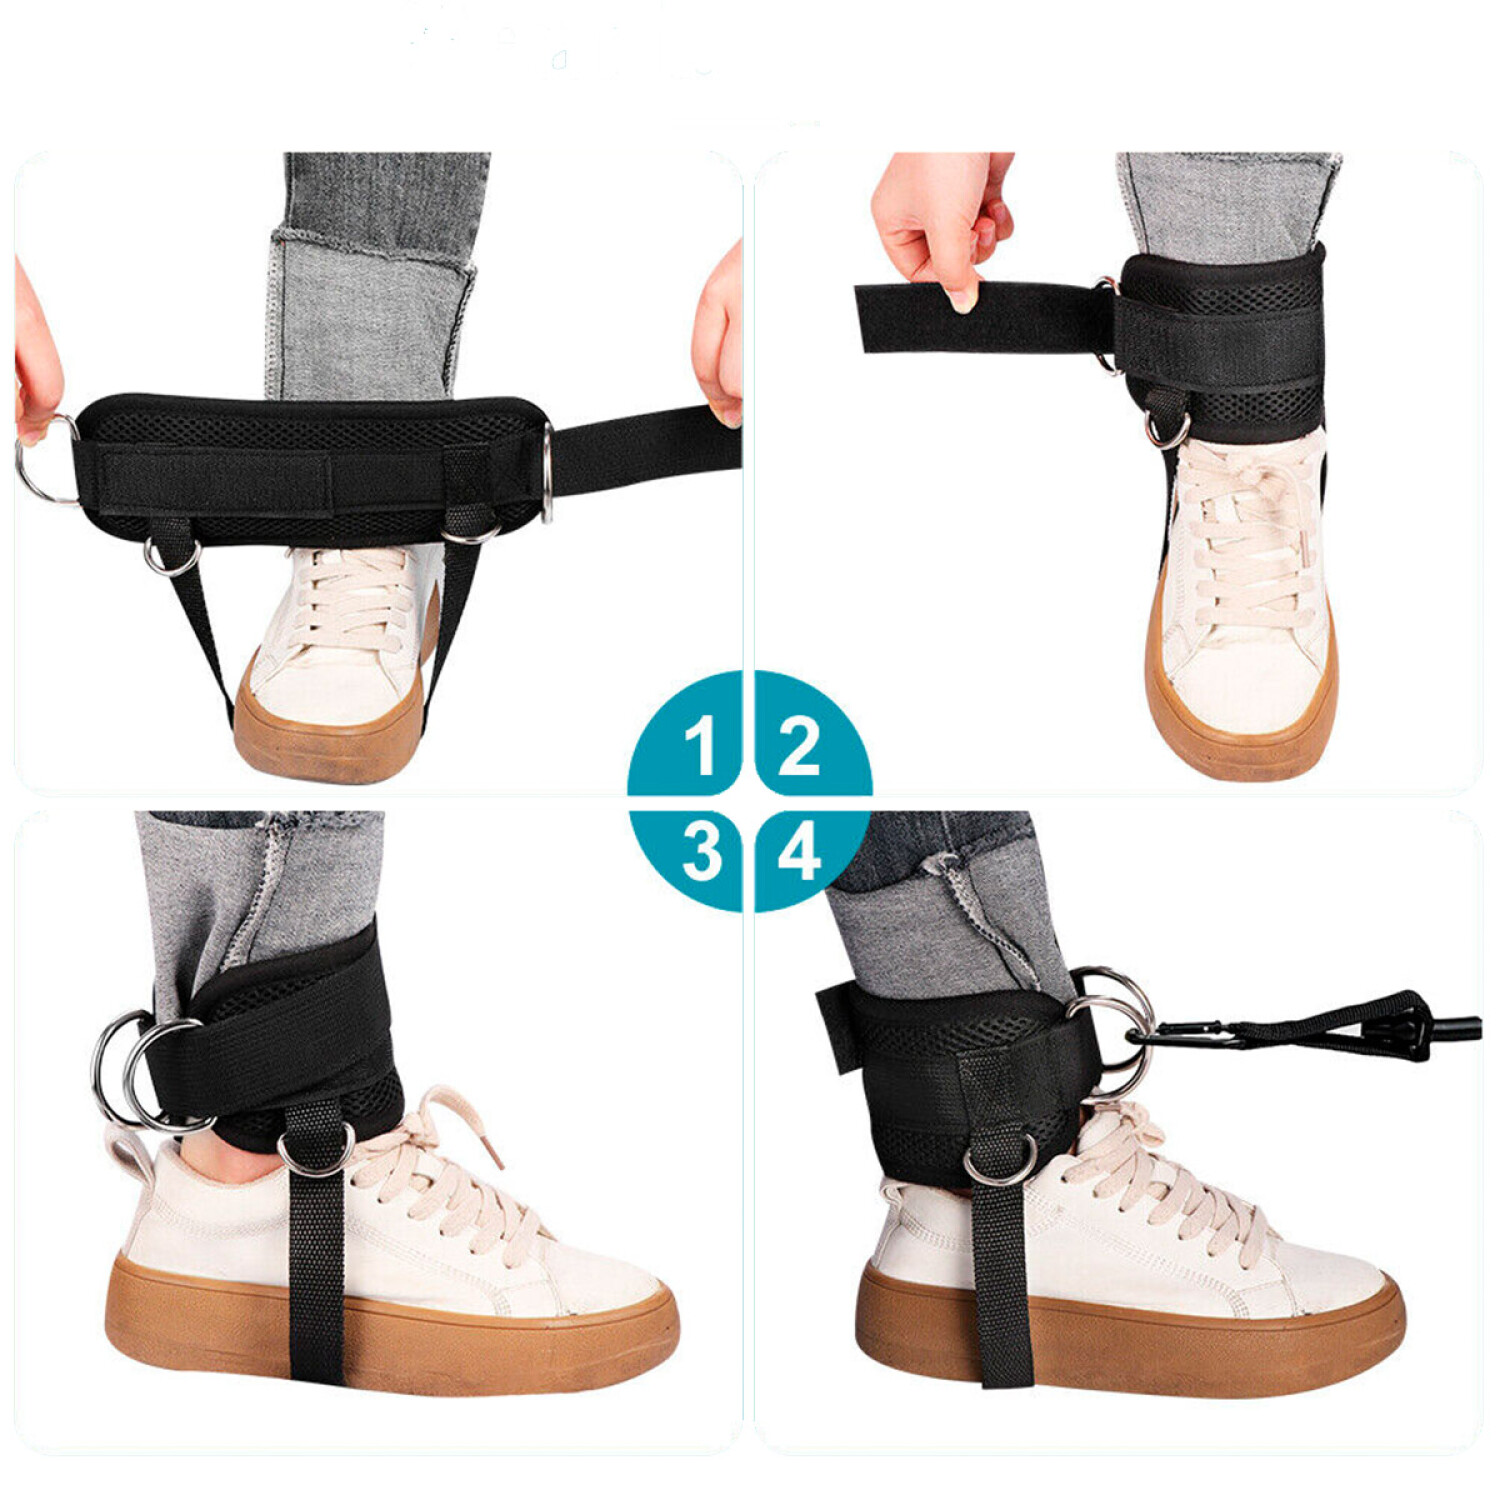 Una tobillera para polea es un tipo de dispositivo que se coloca alrededor  del tobillo y se utiliza para realizar ejercicios de…